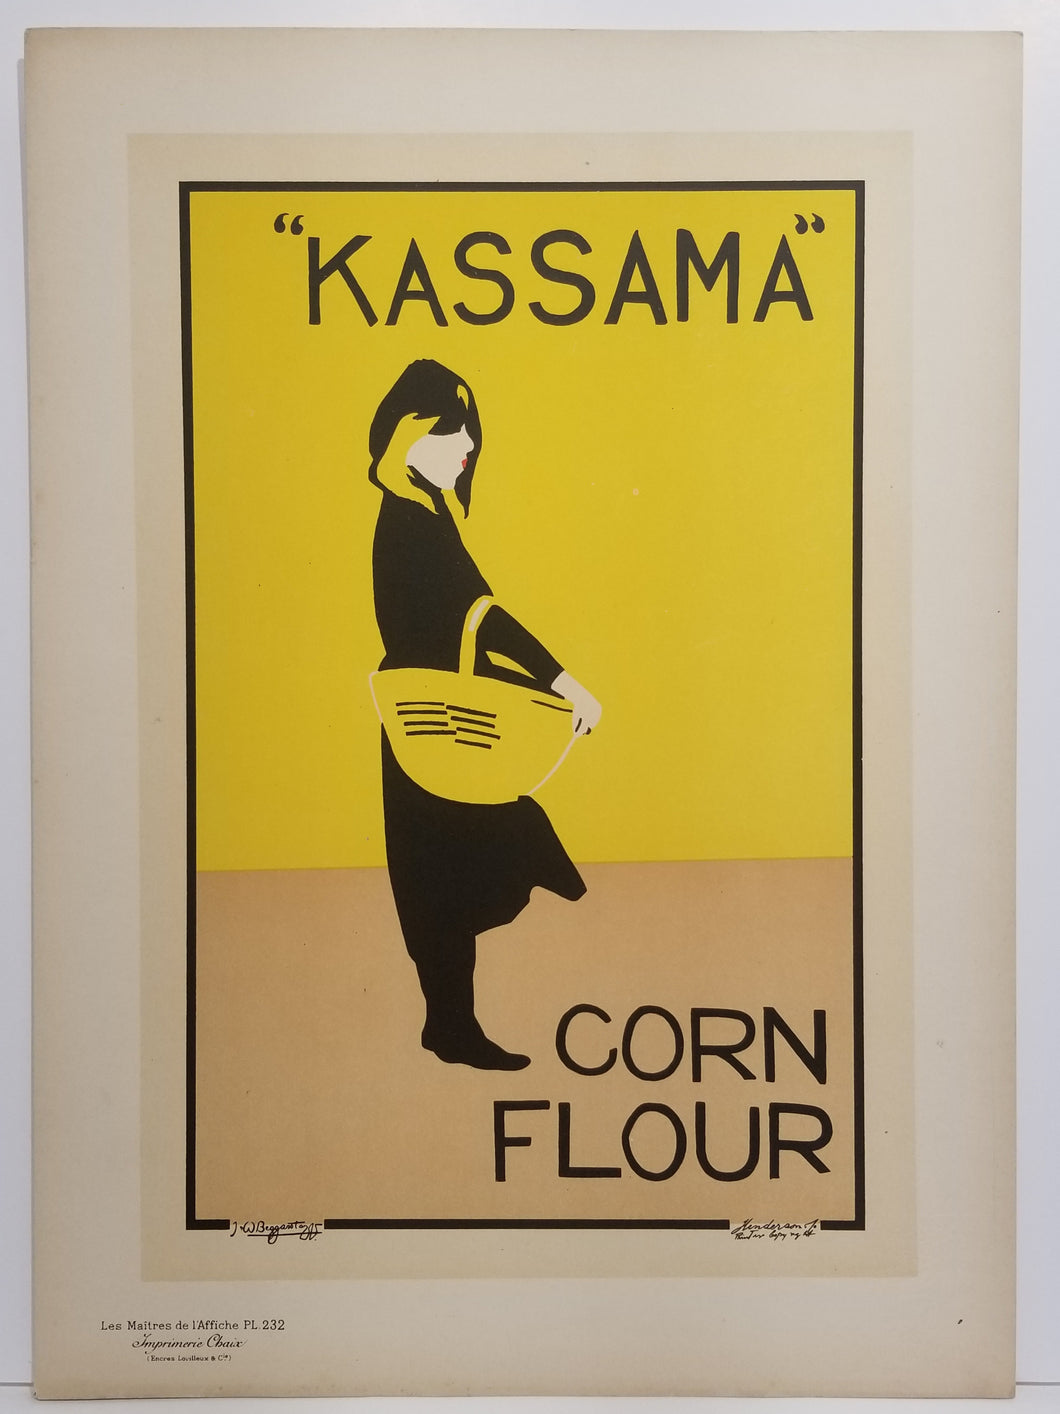 Corn Flour Kassana. 1900.